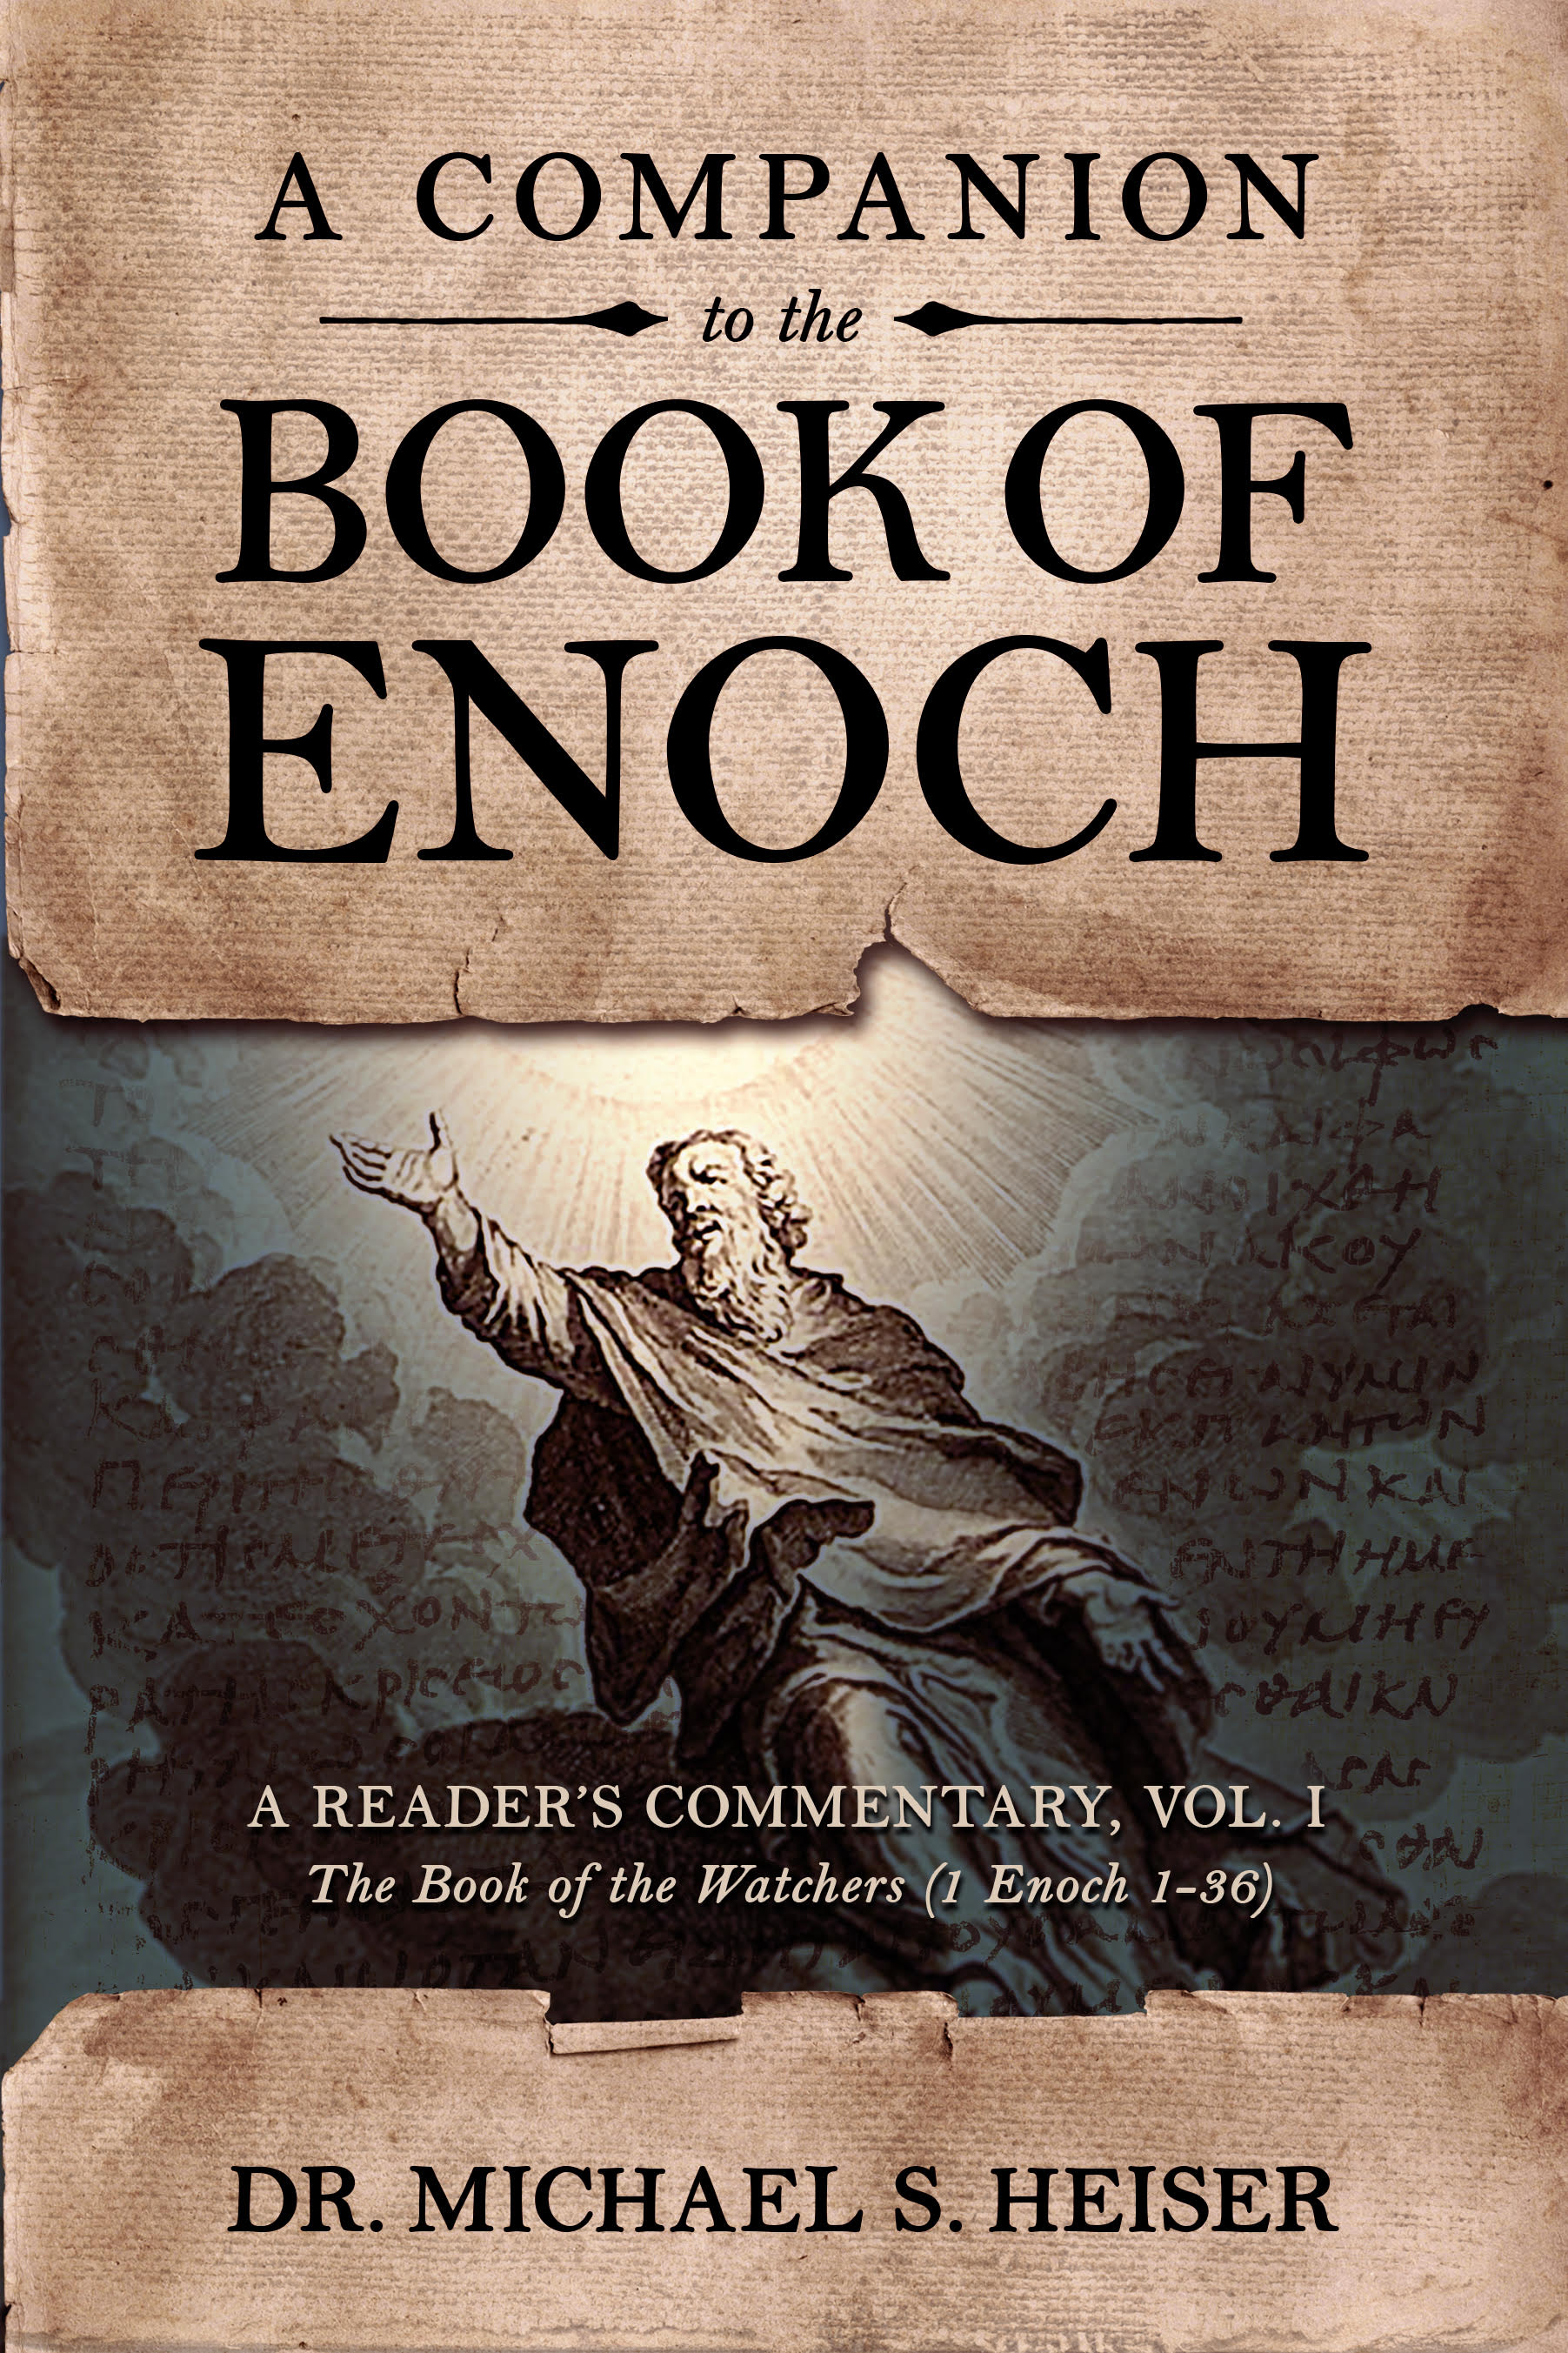 audio book of enoch